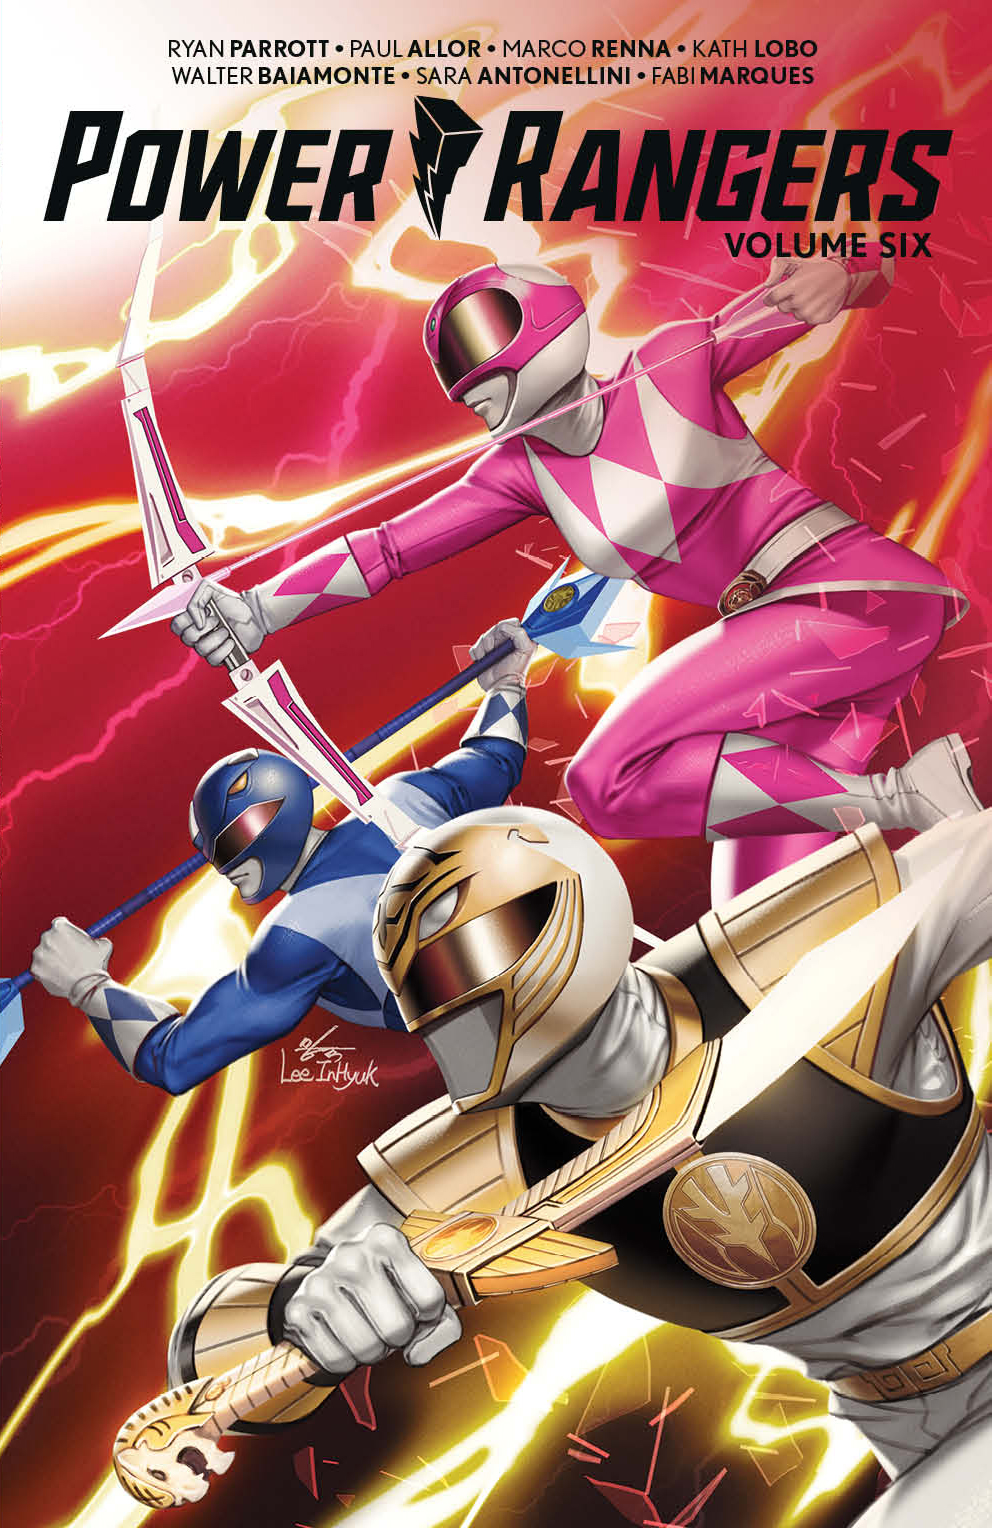 Power Rangers Graphic Novel Volume 6